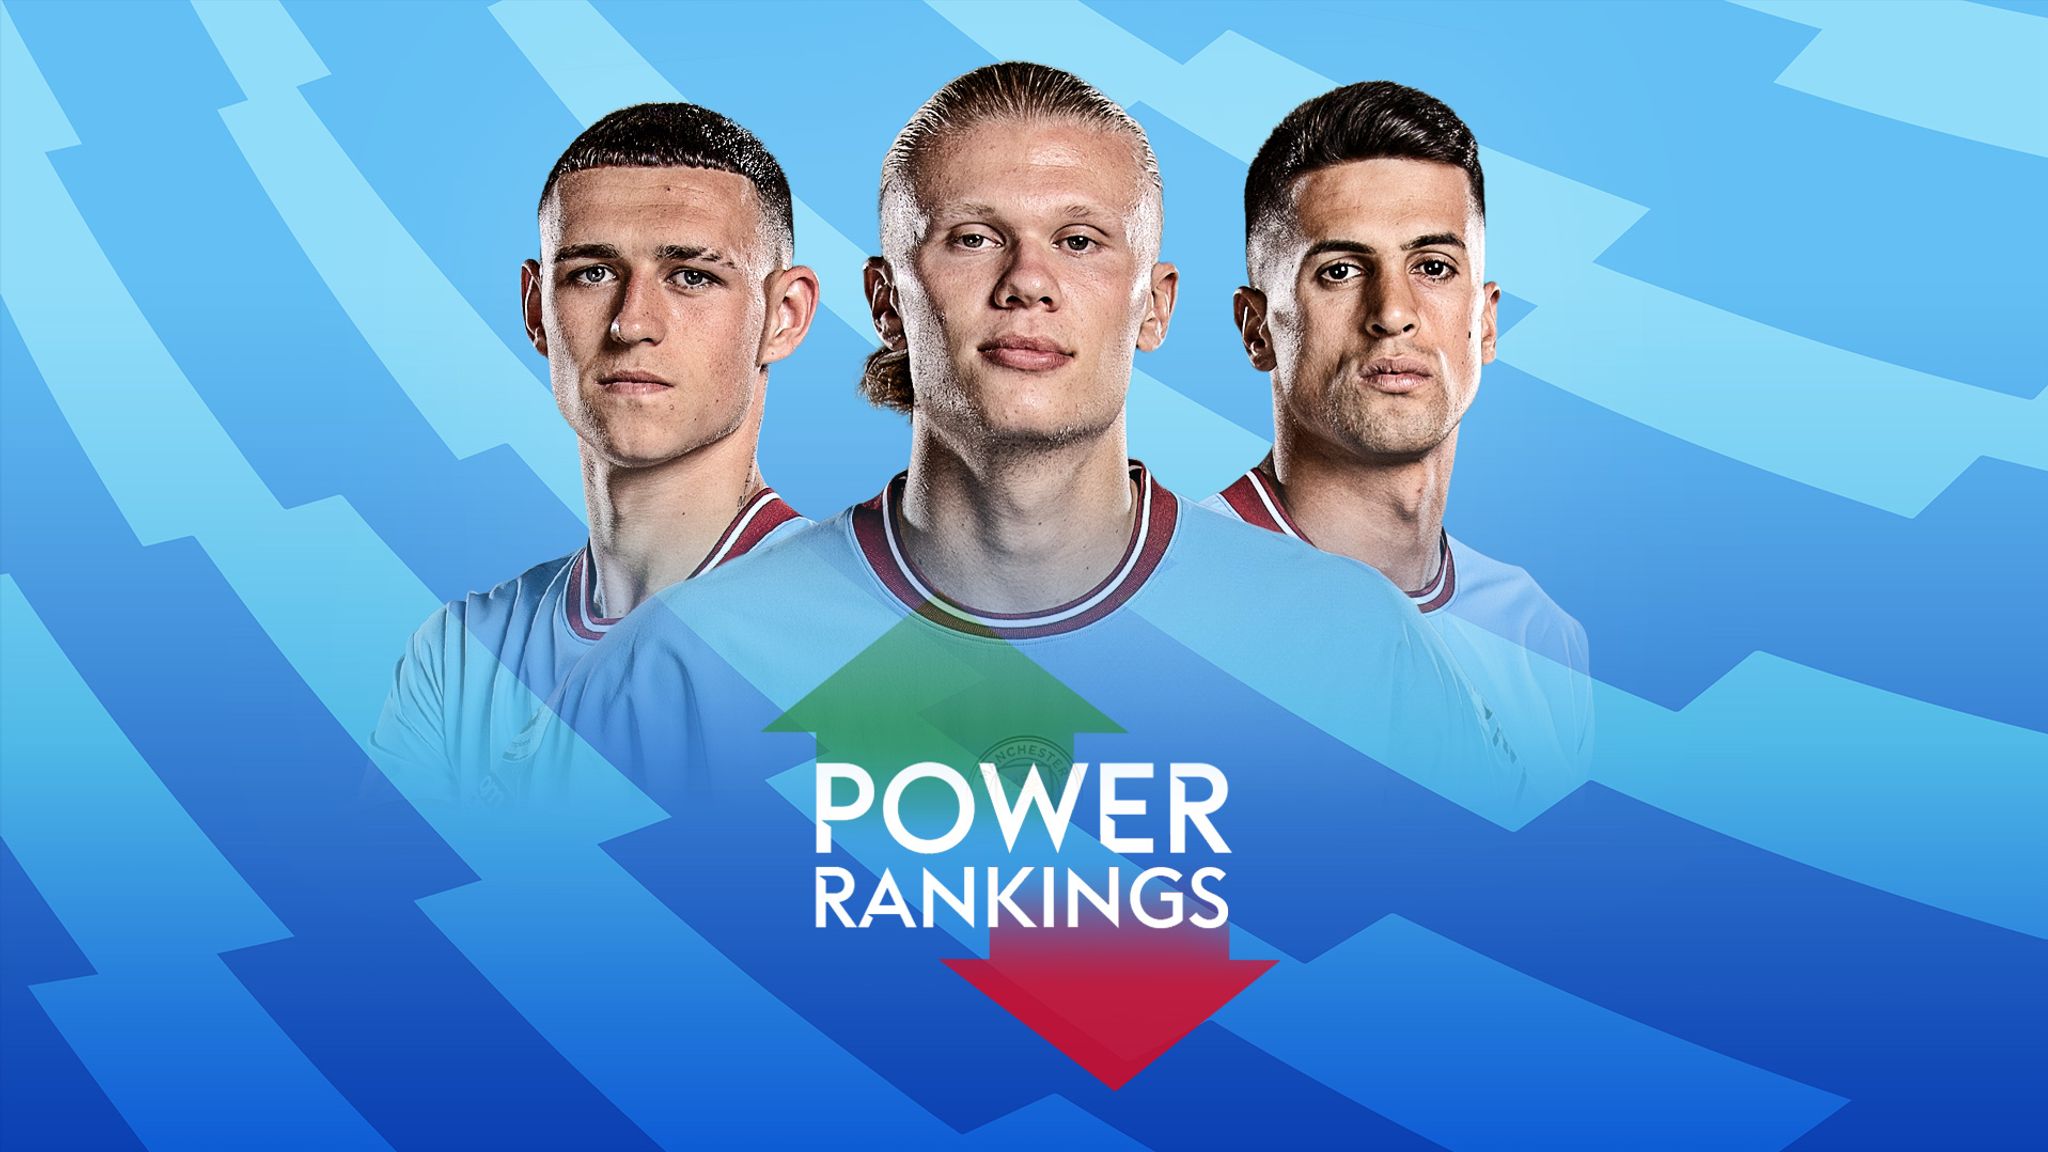 2019 Players' Weekend Nickname Power Rankings